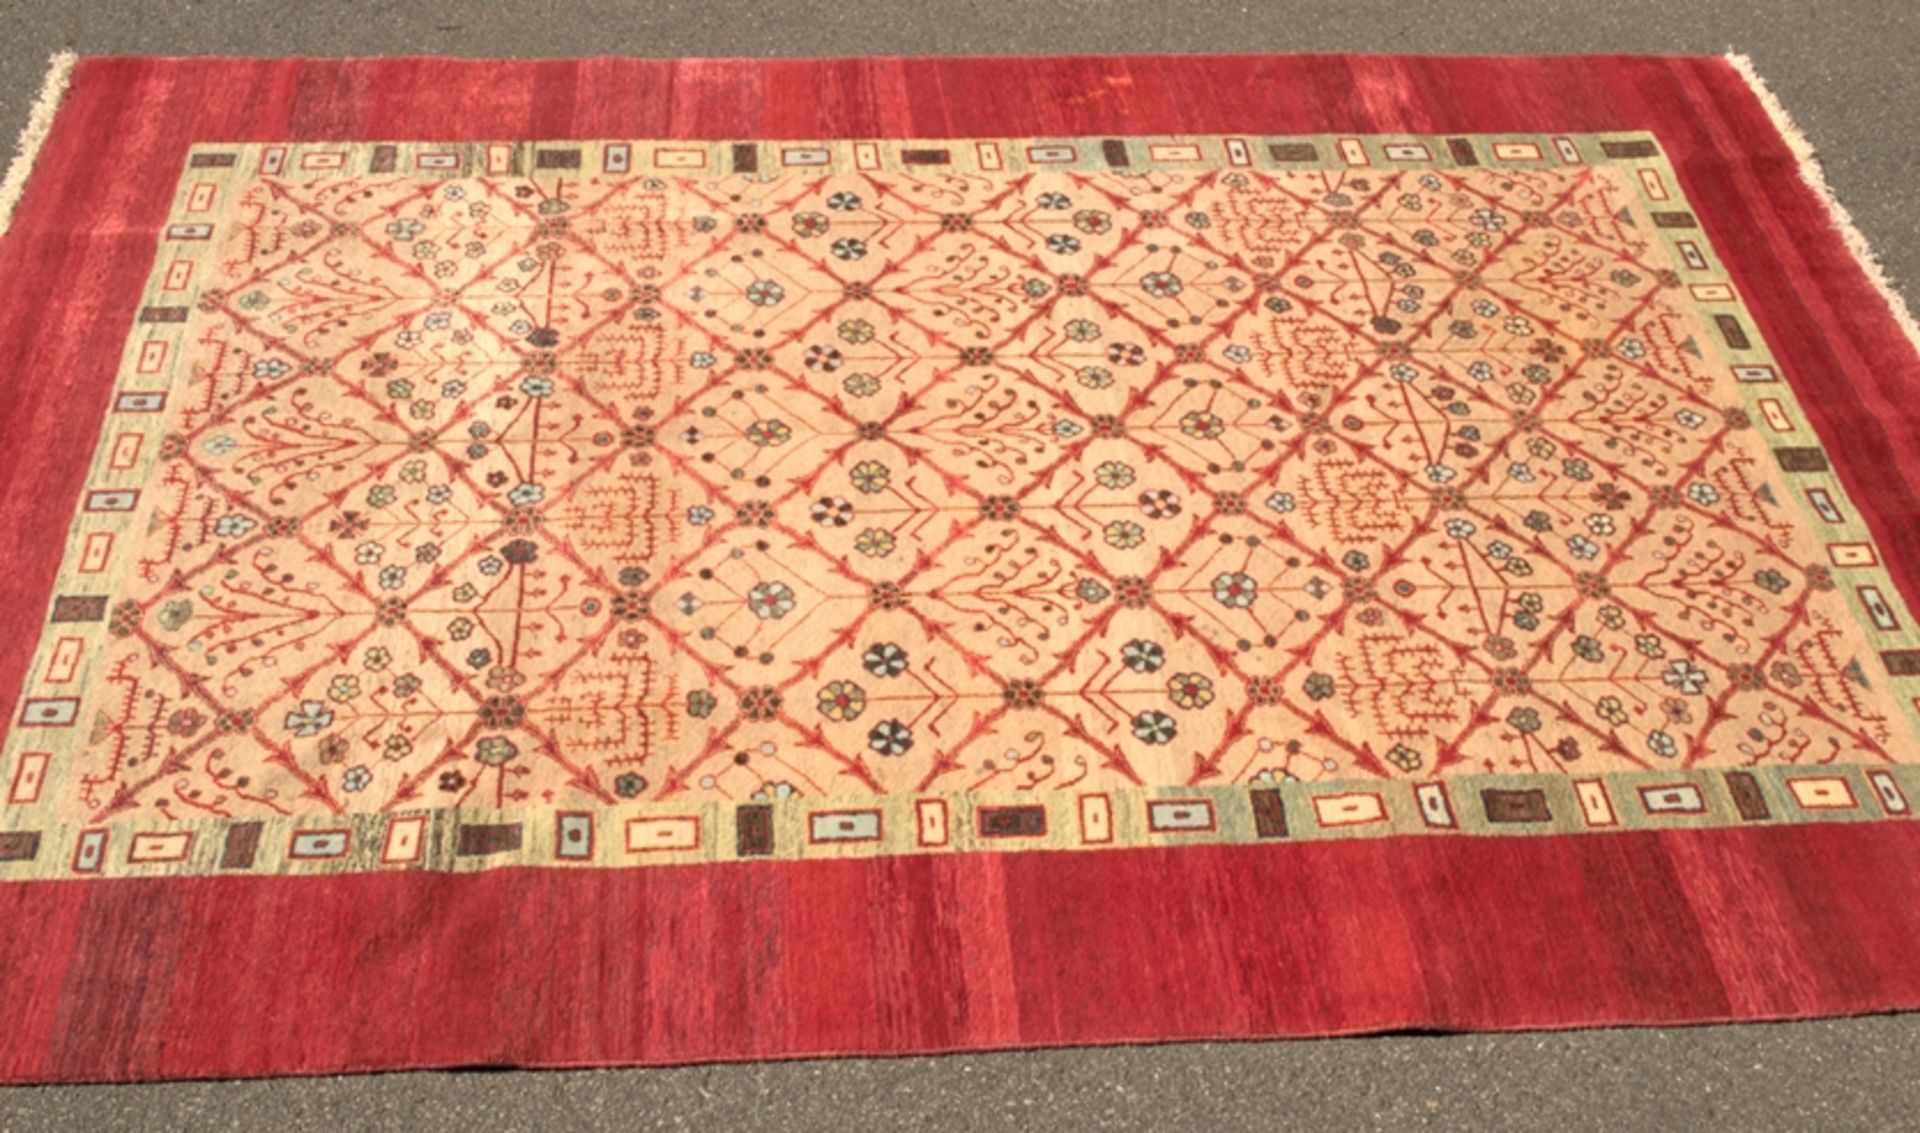 Moderner Gabbeh - Teppich, Wolle. ca. 188 x 270 cm. Guter gebrauchter, ungereinigter Erhalt. 20./ - Bild 6 aus 9